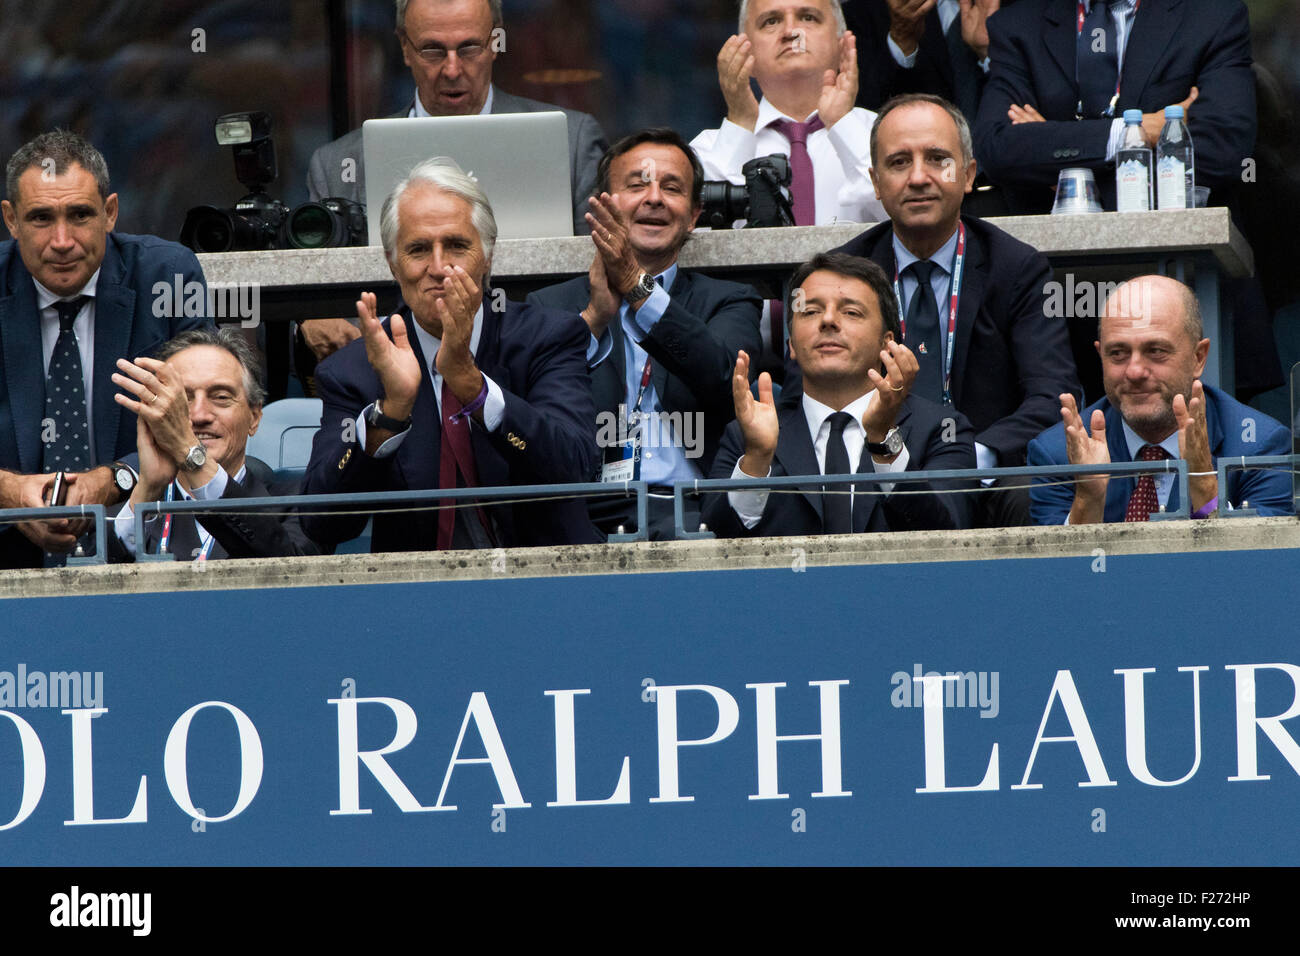 Le premier ministre Italien Matteo Renzi (troisième à partir de la gauche) montres Flavvia Pennetta (ITA) et Roberta Vinci (ITA) chez les femmes de la finale à l'US Open de Tennis 2015 Banque D'Images